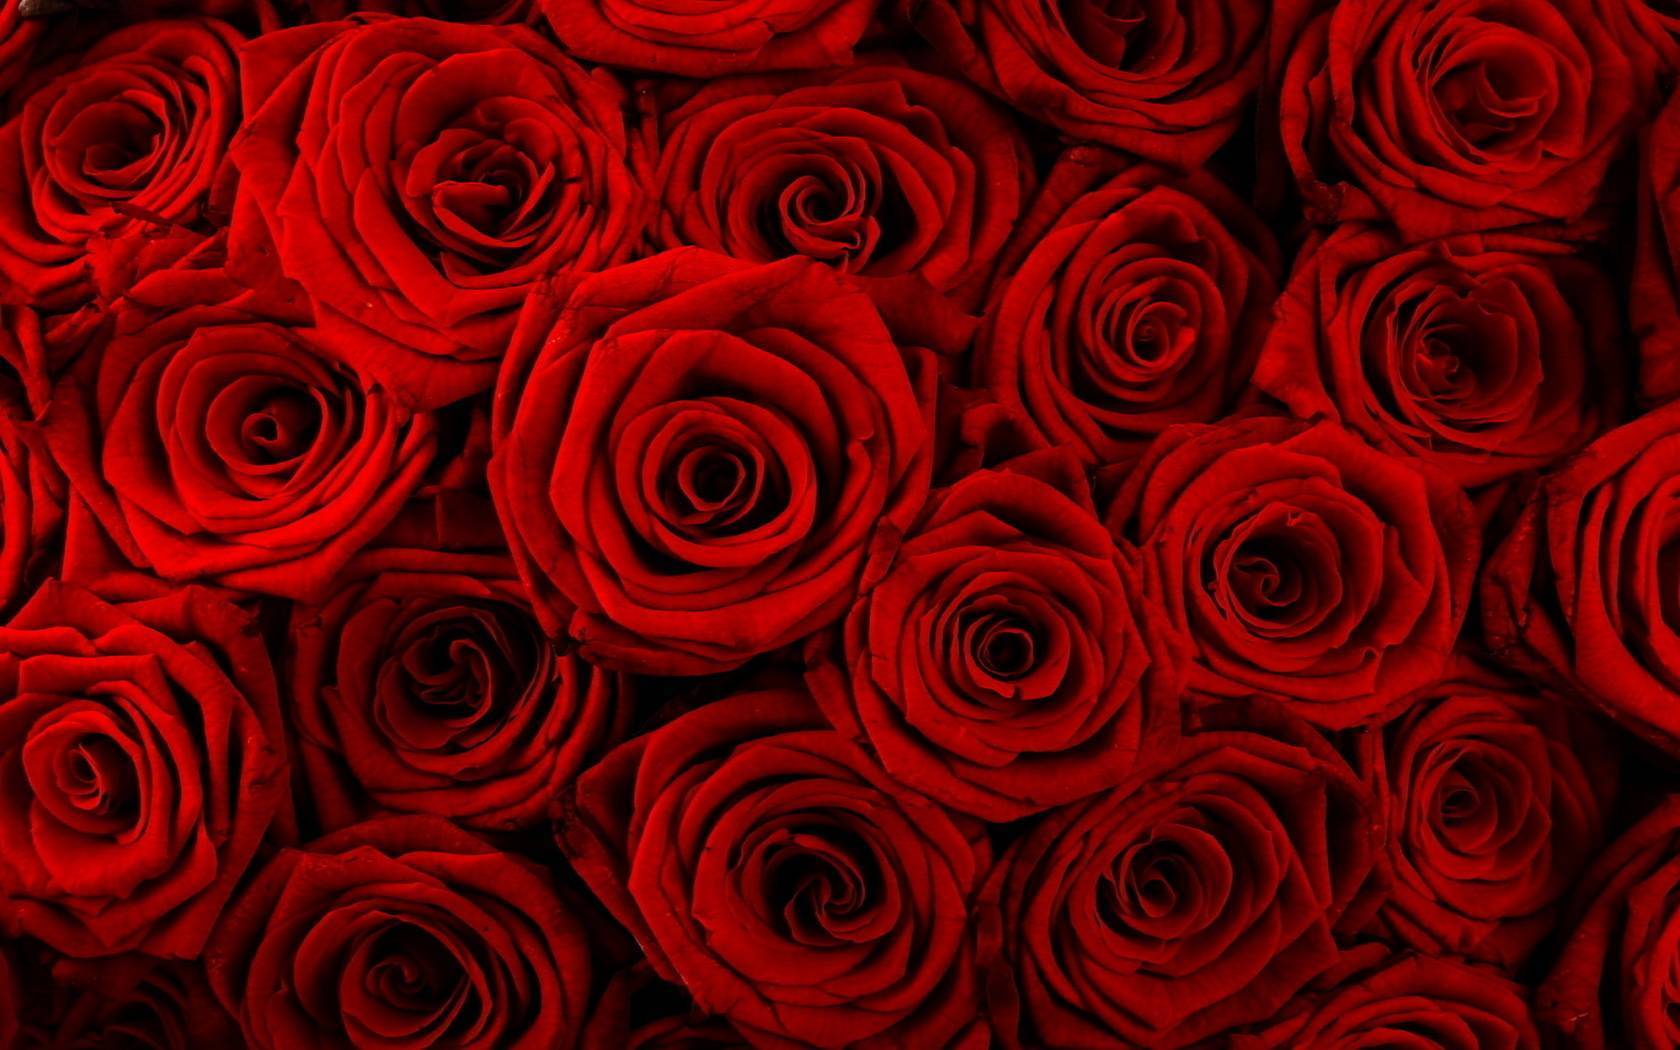 Виды и сорта роз: фото, названия, описание цветов какие бывают виды роз